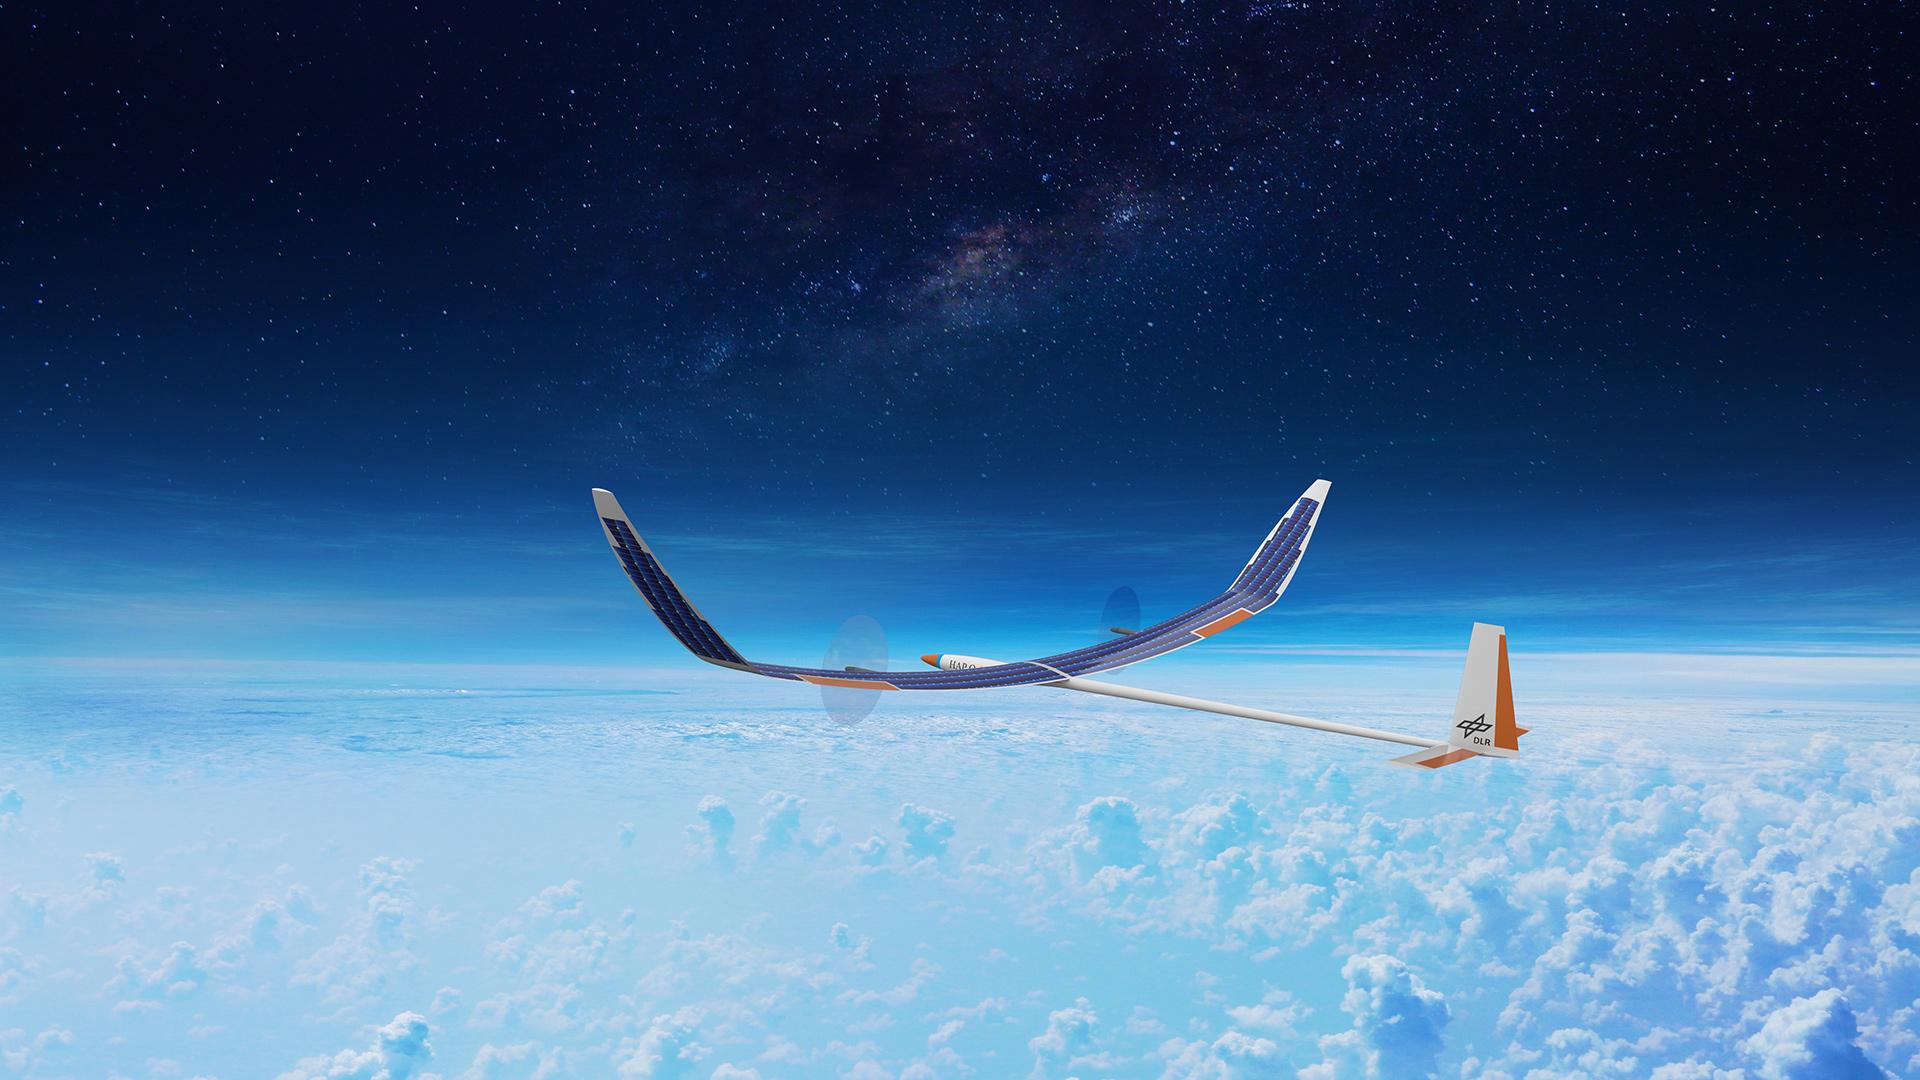 DLR entwickelt unbemanntes Stratosphärenflugzeug